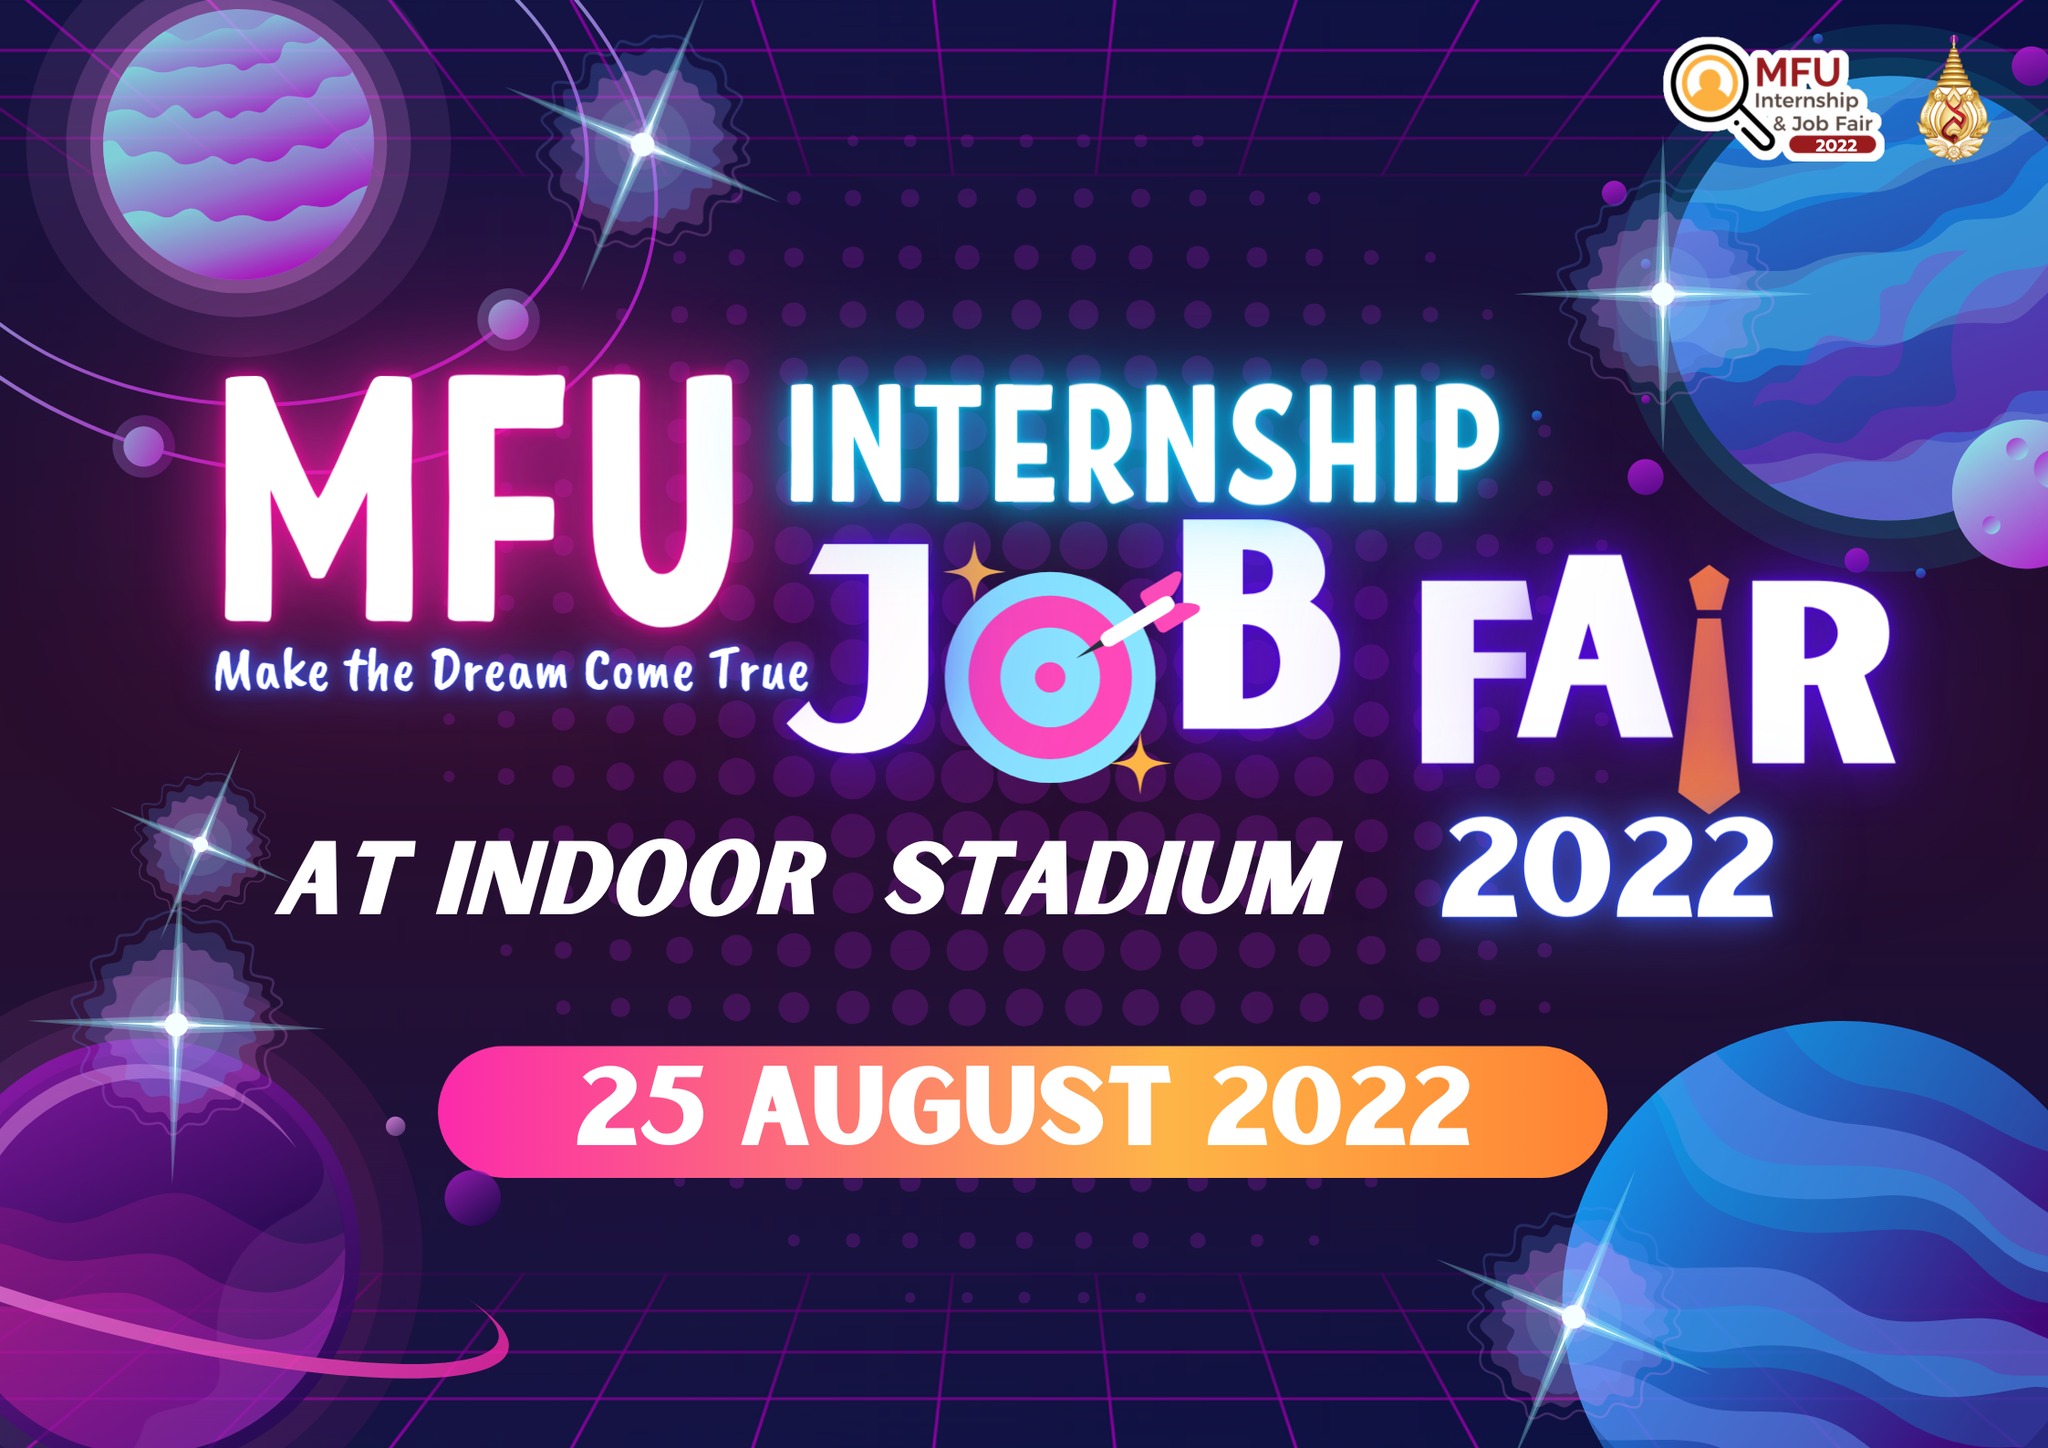 ขอเชิญนักศึกษาปัจุบันและนักศึกษาเก่าร่วมงาน MFU Internship & Job Fair 2022 